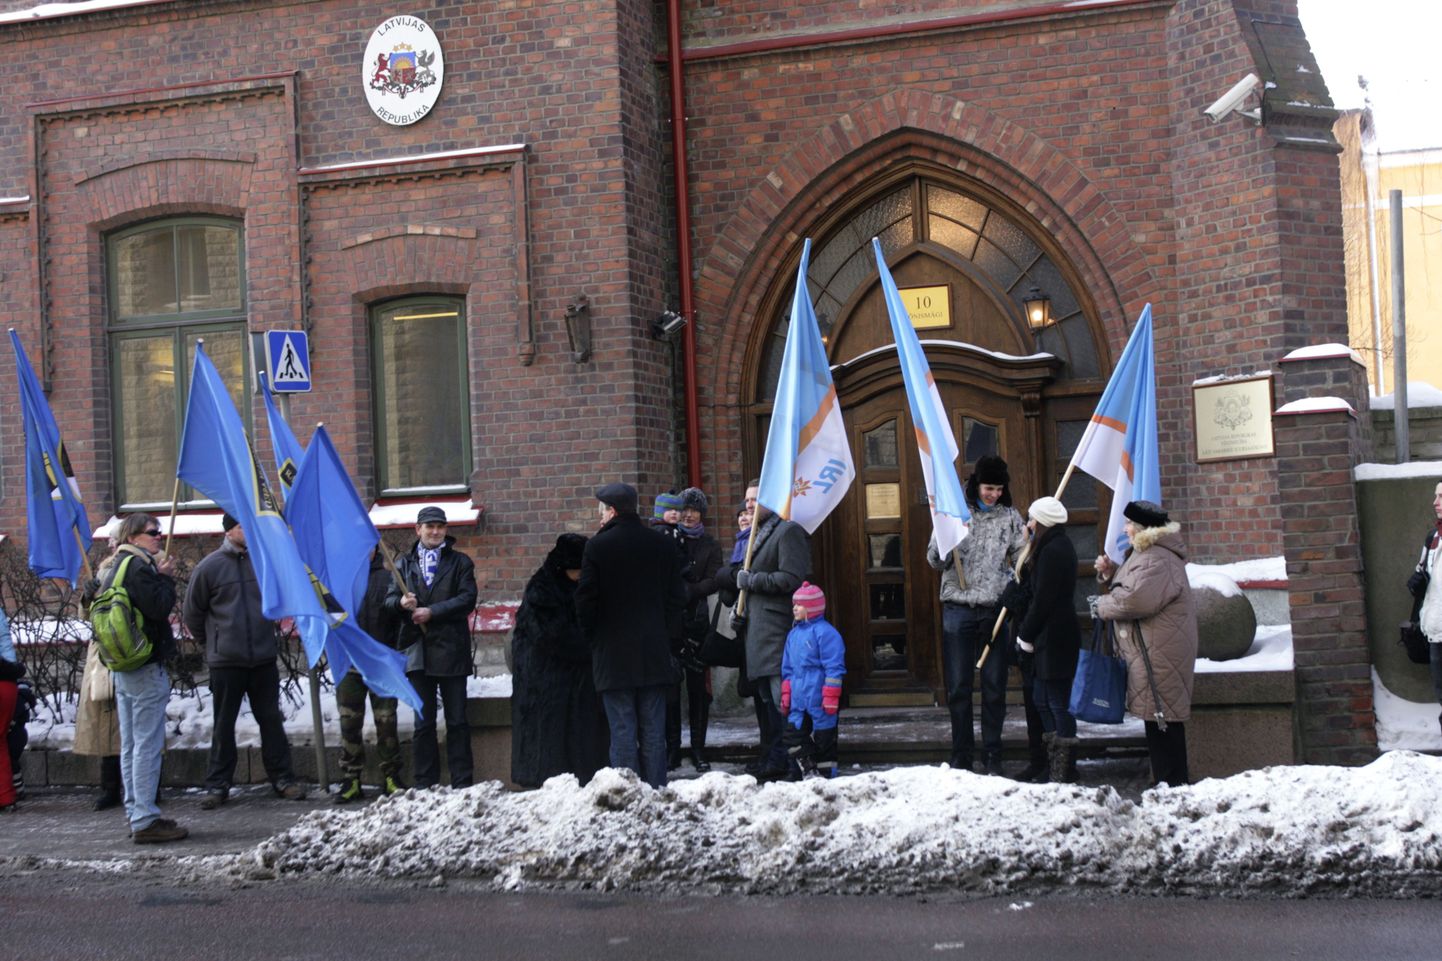 IRLi rahvusased avaldavad meelt Läti saatkonna ees läti keele kaitseks sealsel referendumil.